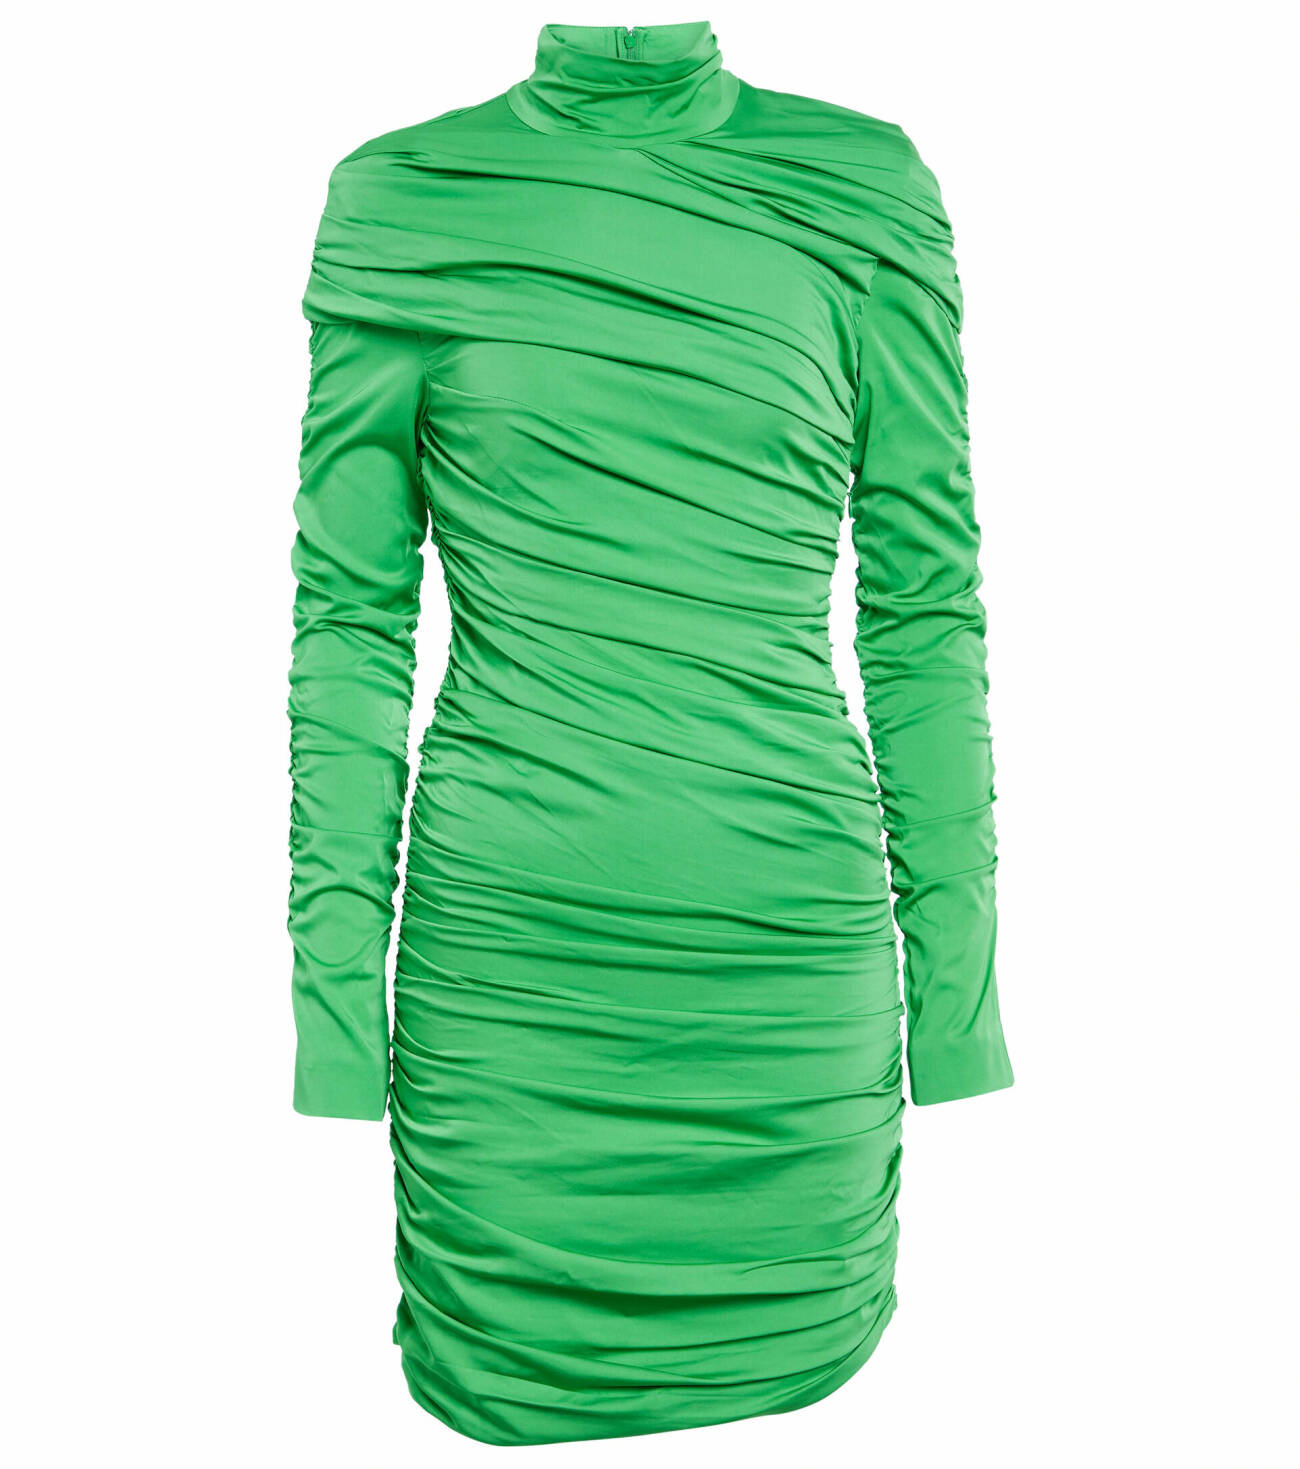 grön klänning